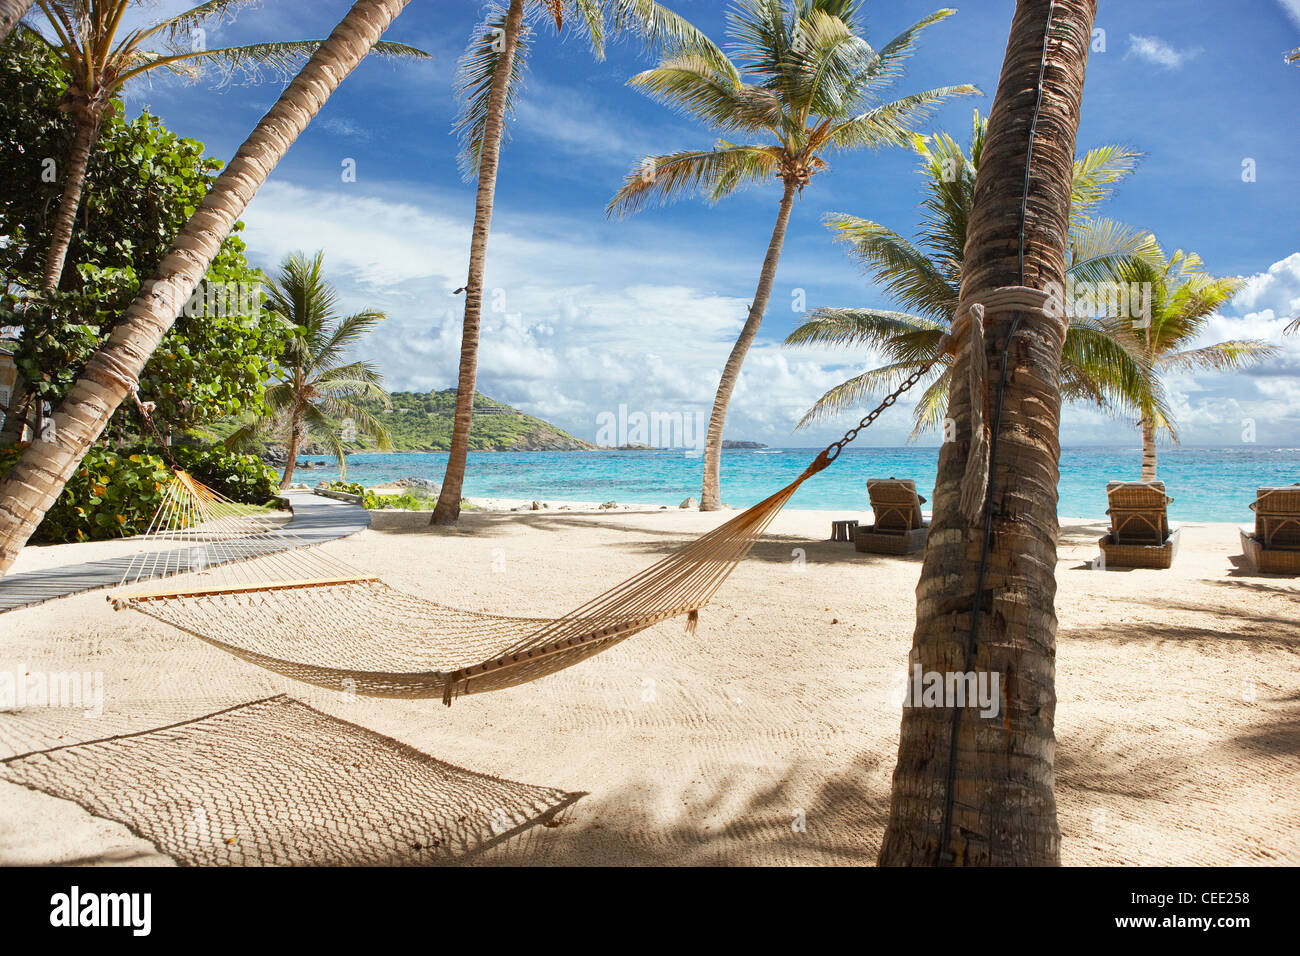 Isola paradiso spiaggia privata esclusiva Mustique Caraibi palme appartato non persone cielo sabbia mare deserto sole sole oceano amaca blu Foto Stock